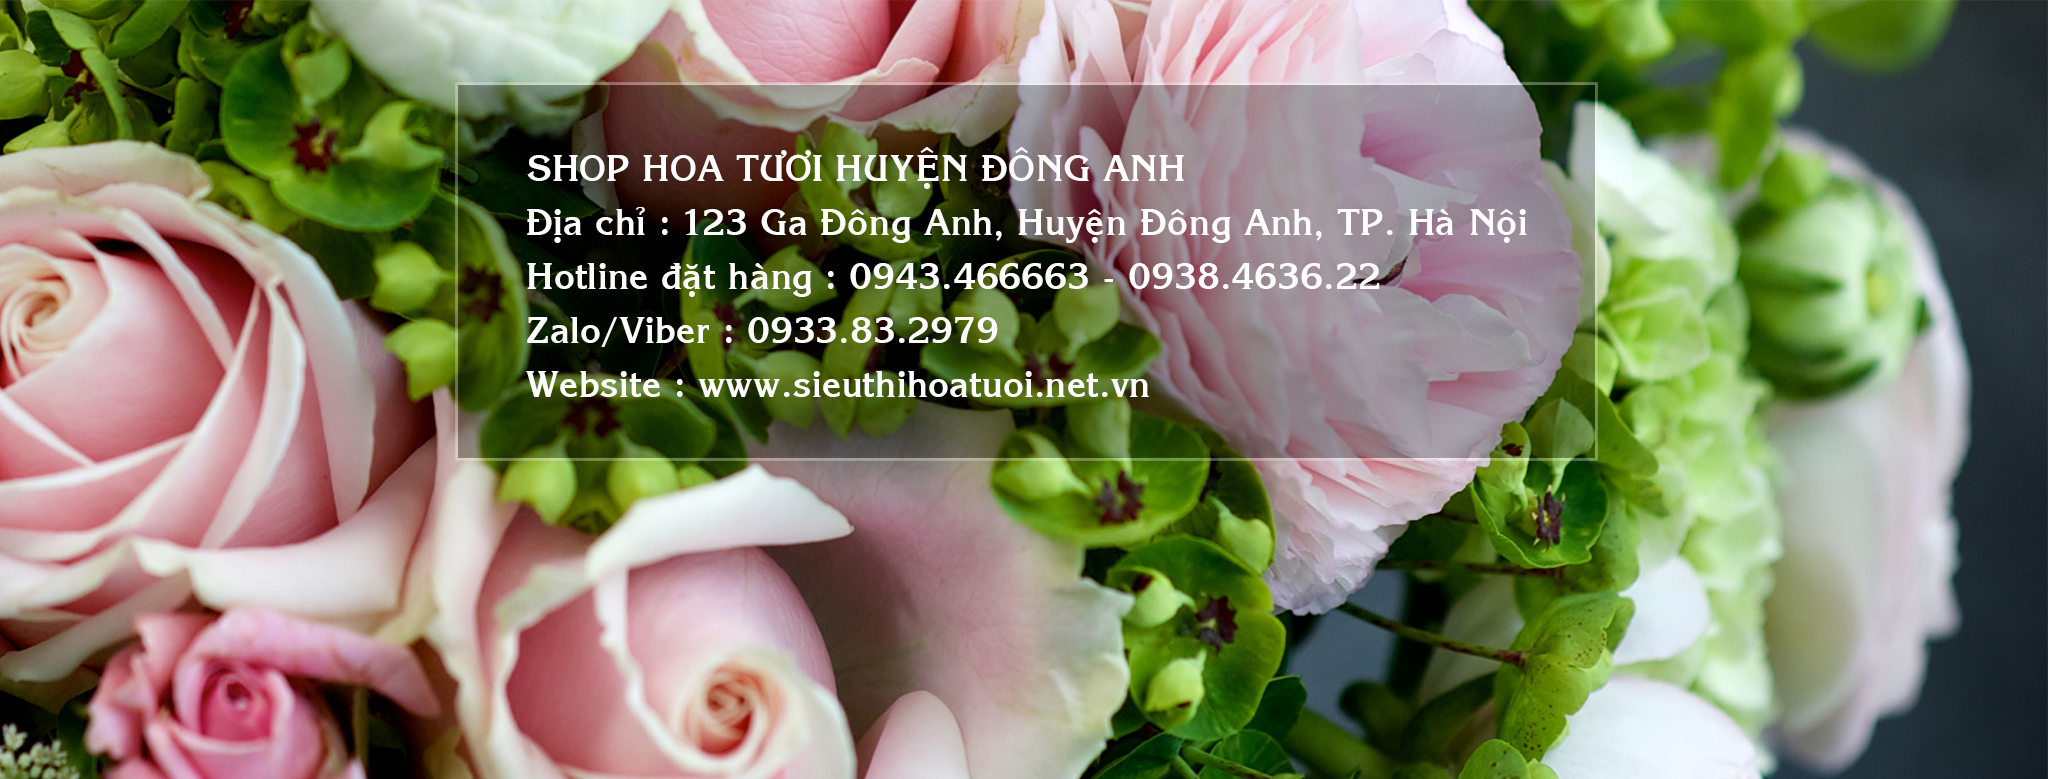 Shop hoa tươi tại Huyện Đông Anh Hà Nội 